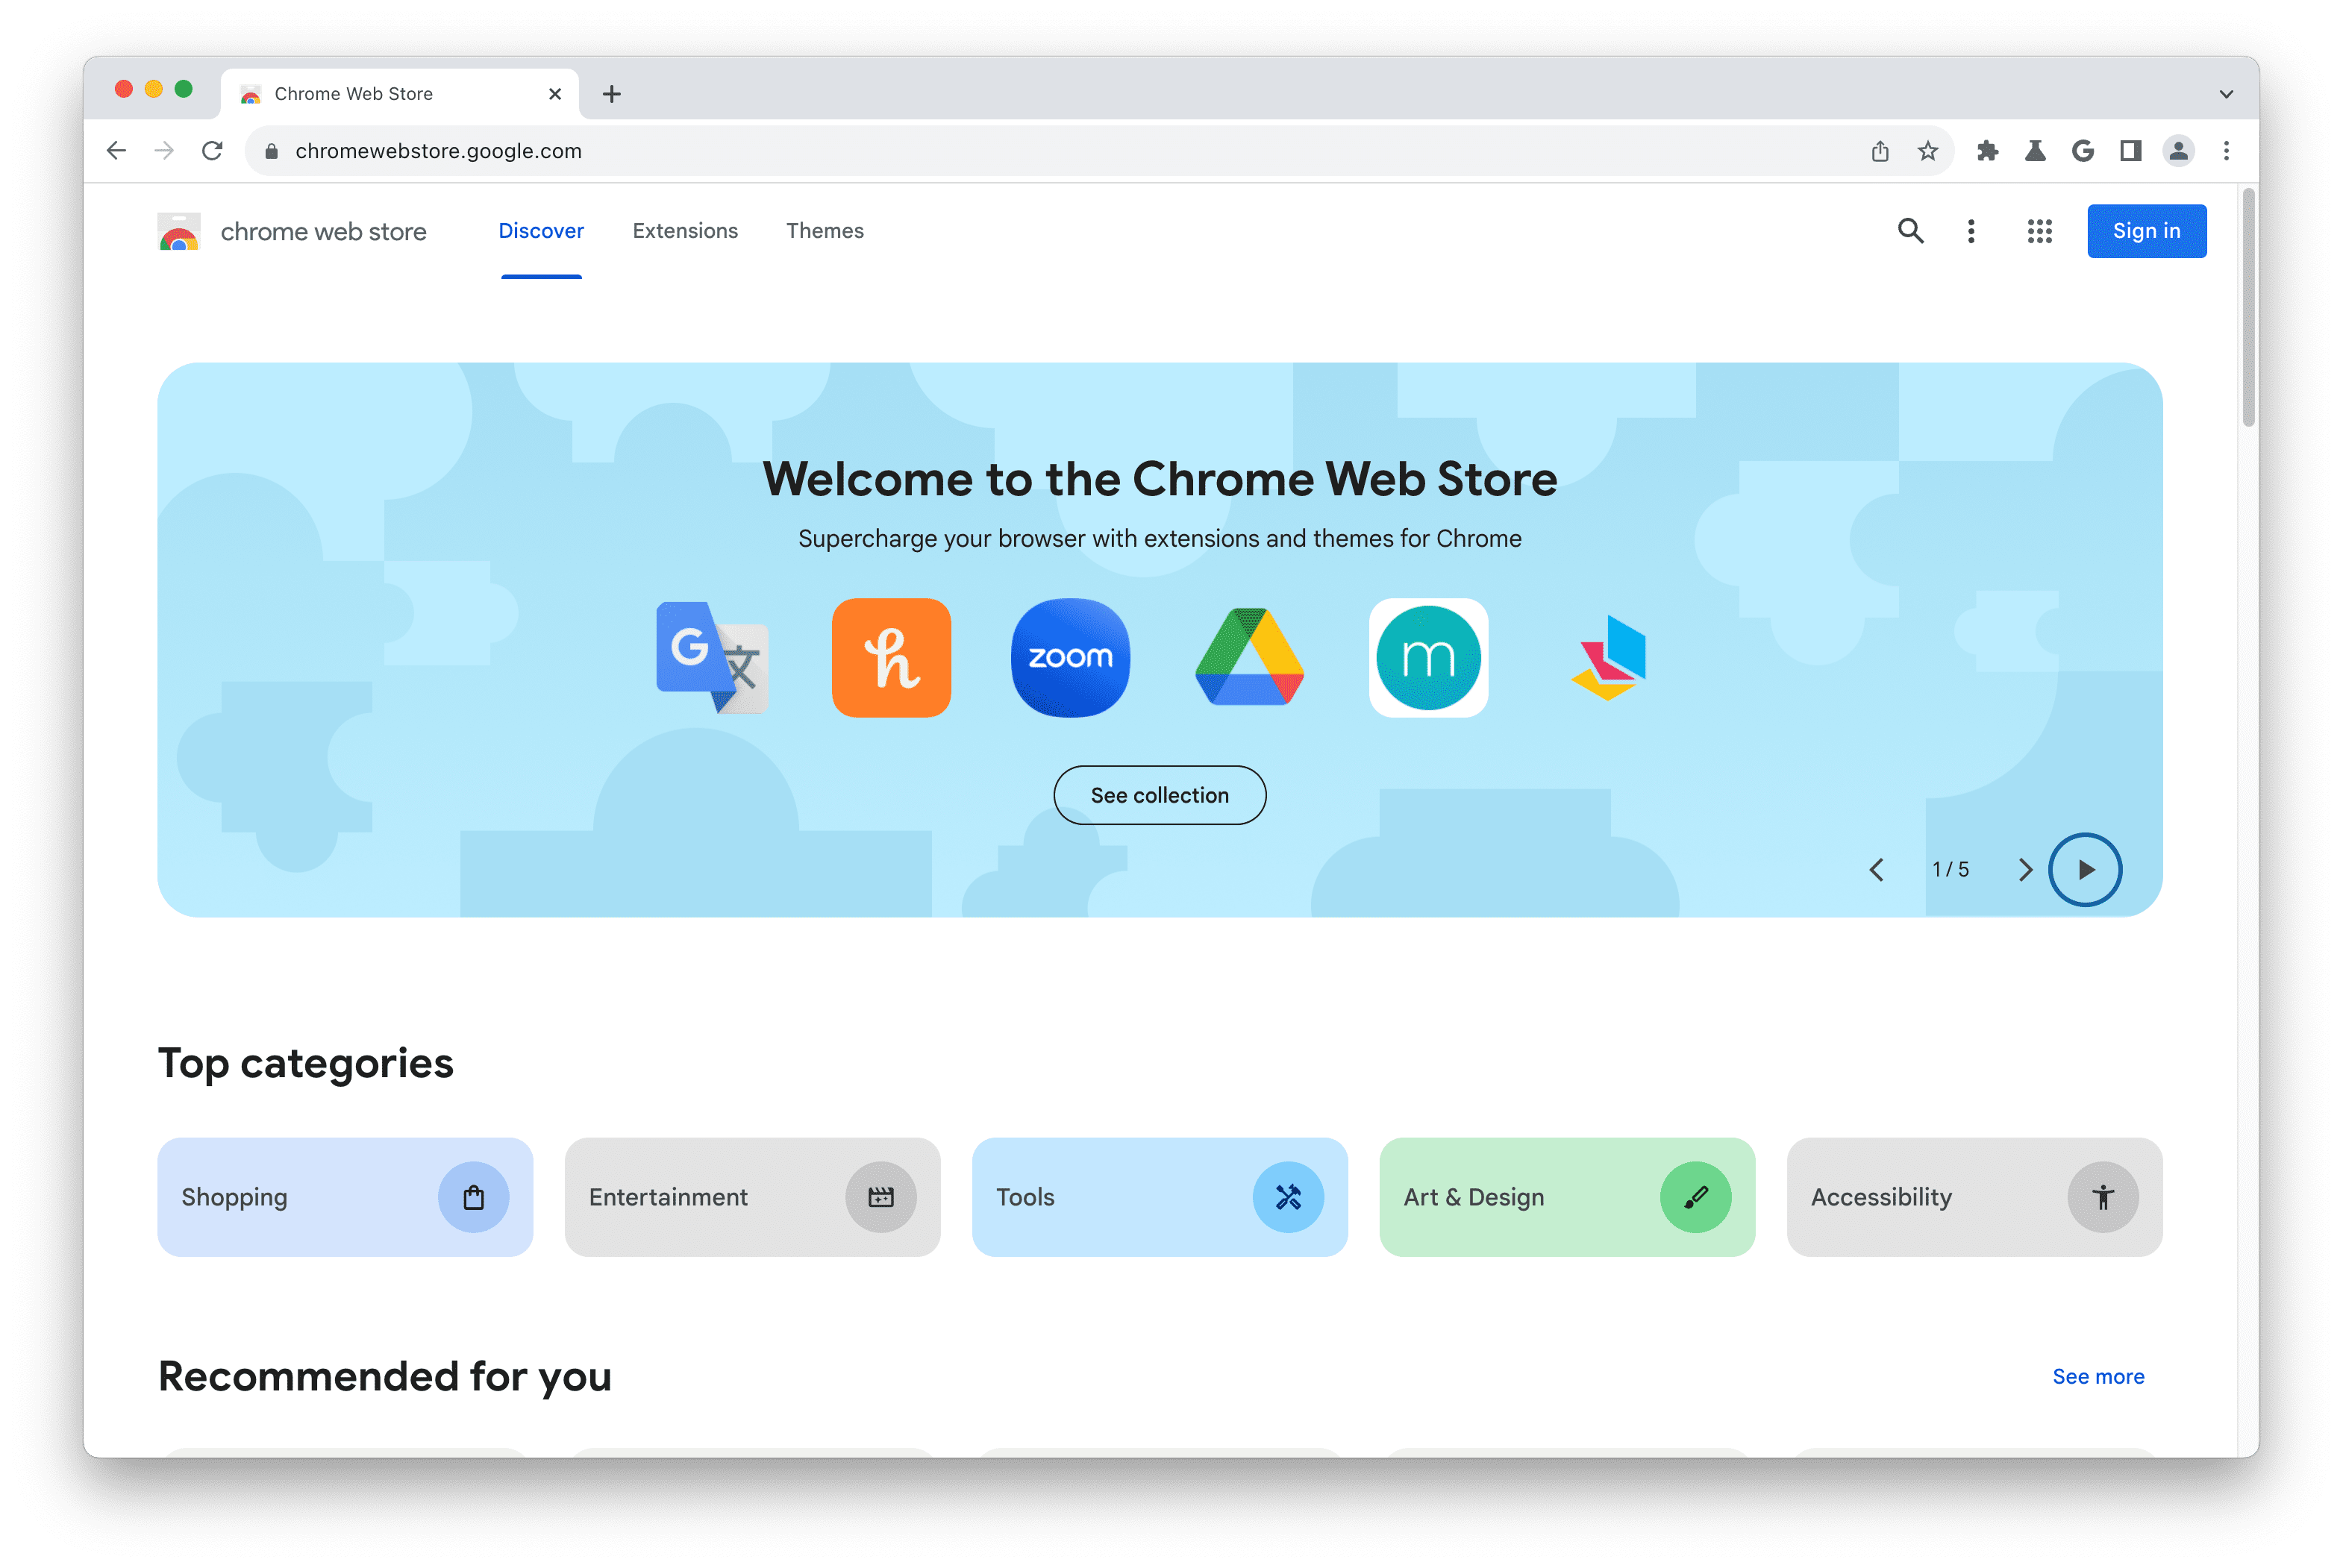 Captura de tela da página inicial da Chrome Web Store.